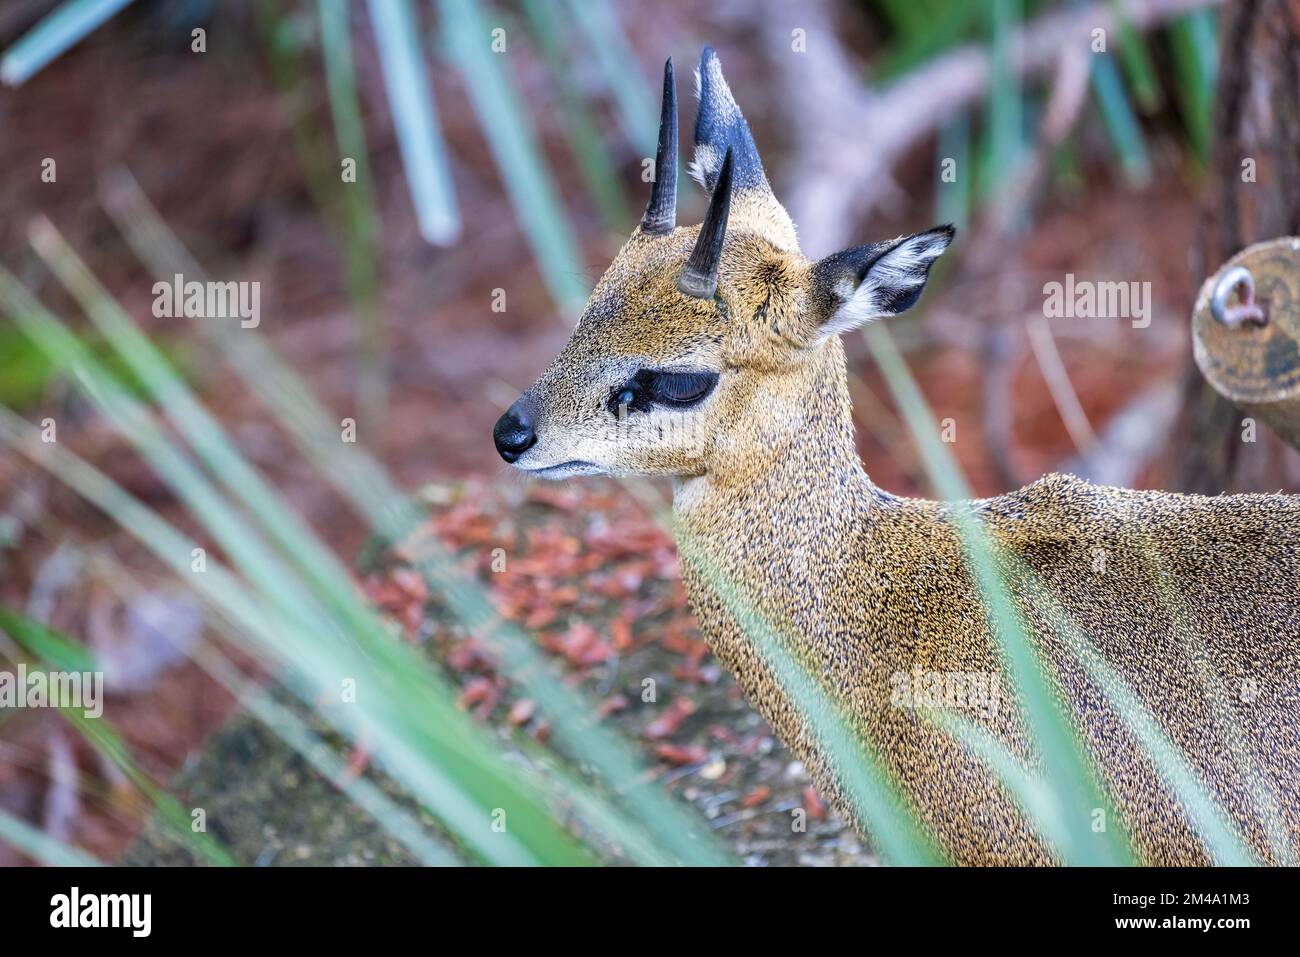 Klipspringer antelope Stock Photo